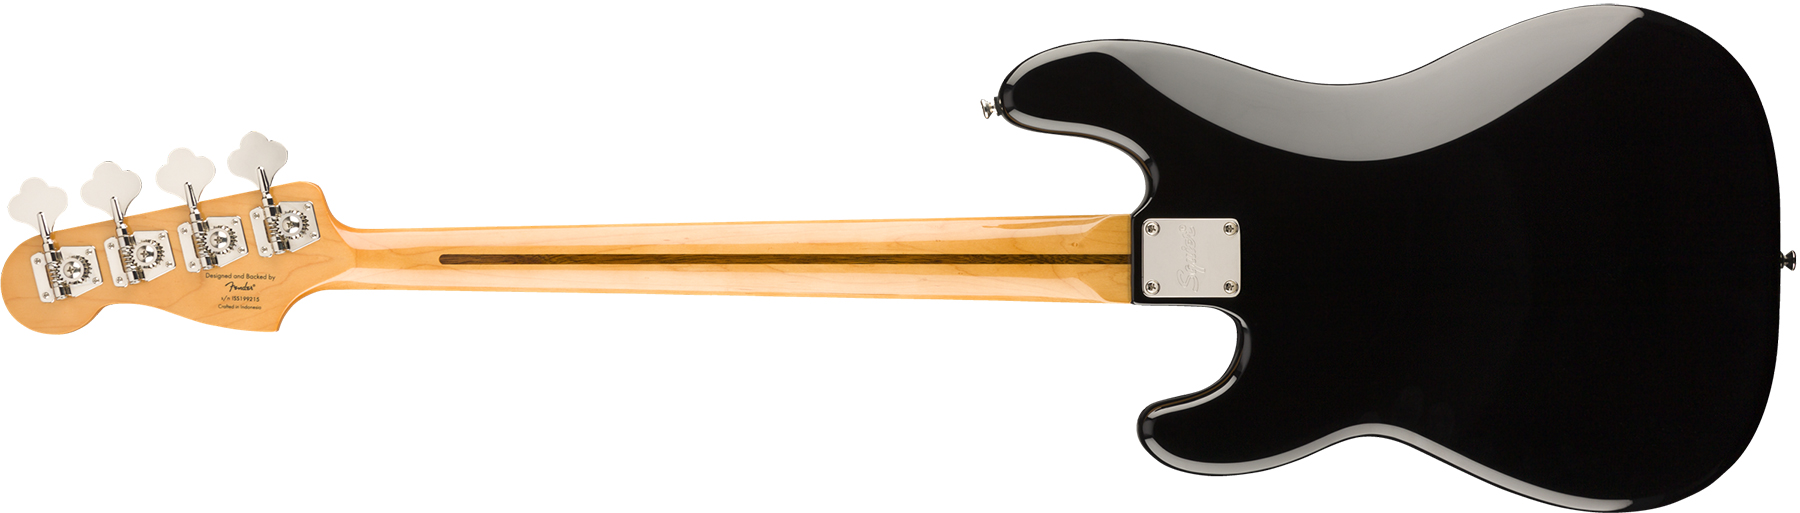 Squier Precision Bass '70s Classic Vibe 2019 Mn - Black - Bajo eléctrico de cuerpo sólido - Variation 1